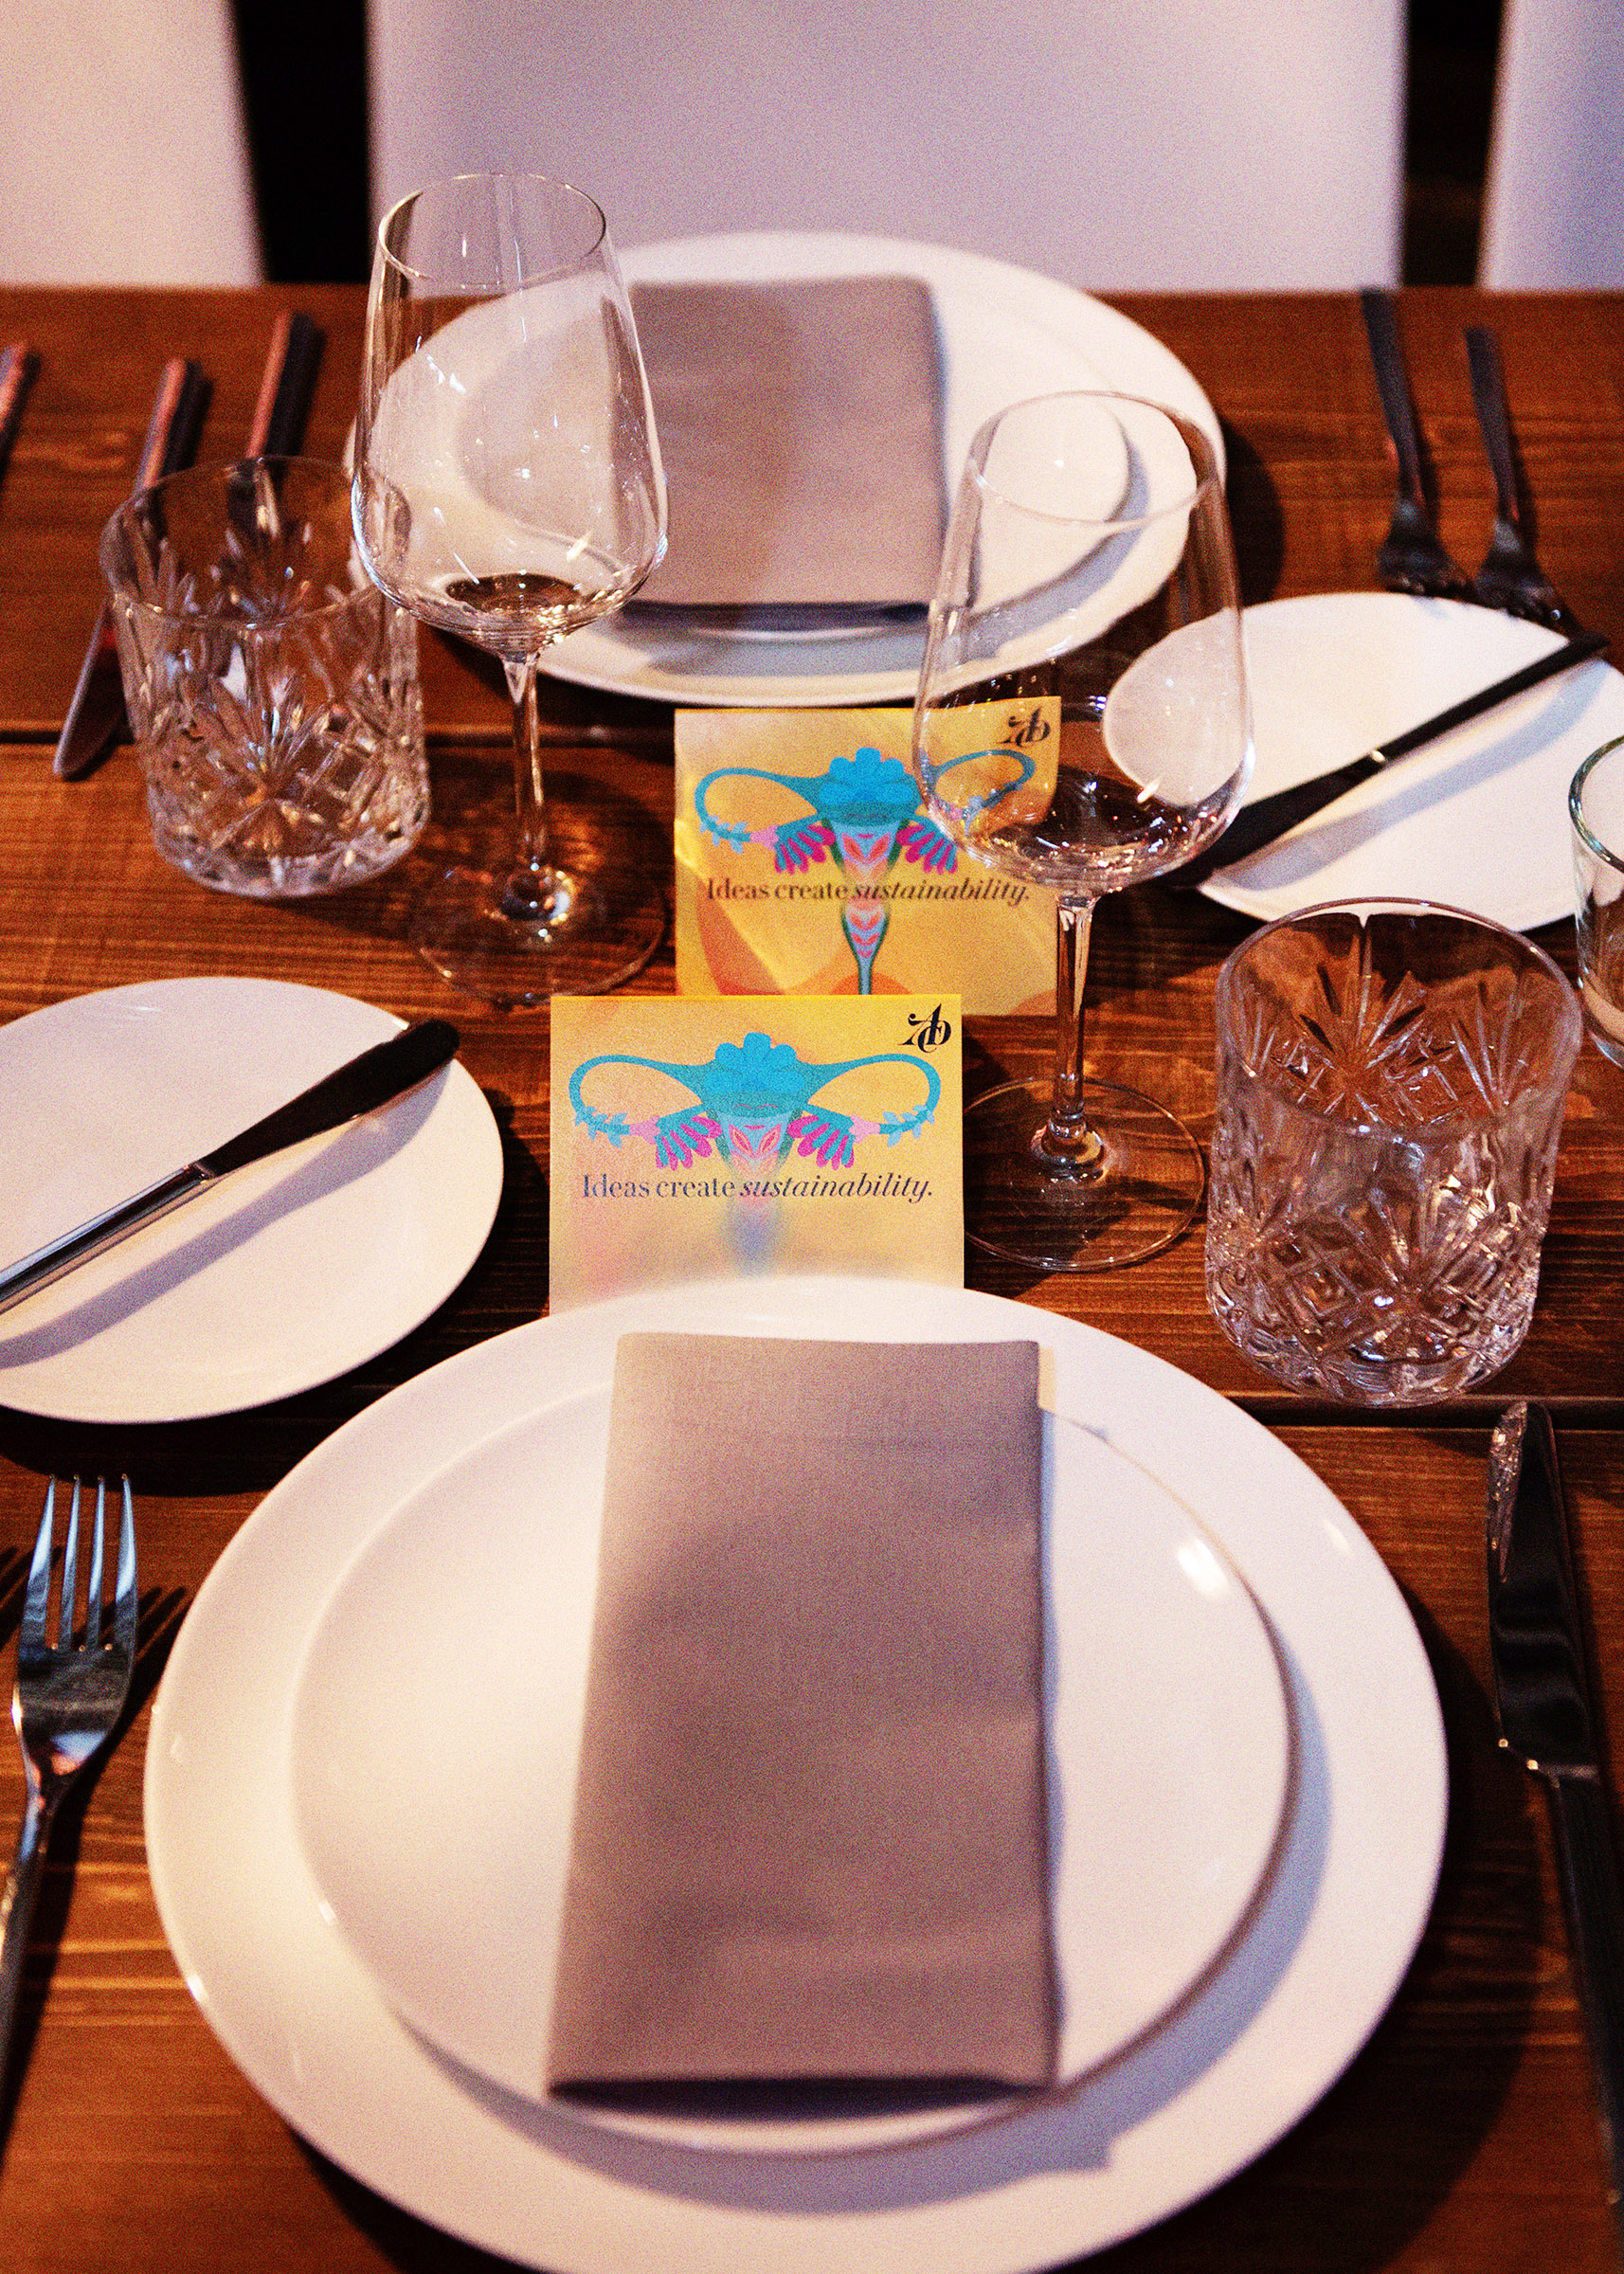 Ein Tischgedeck auf einer Tafel in Laderaum 1. Mehrere Teller und Gläser sind einheitlich angeordnet. Eine Karte mit der Aufschrift "Ideas create sustainability" steht hinter den Tellern.